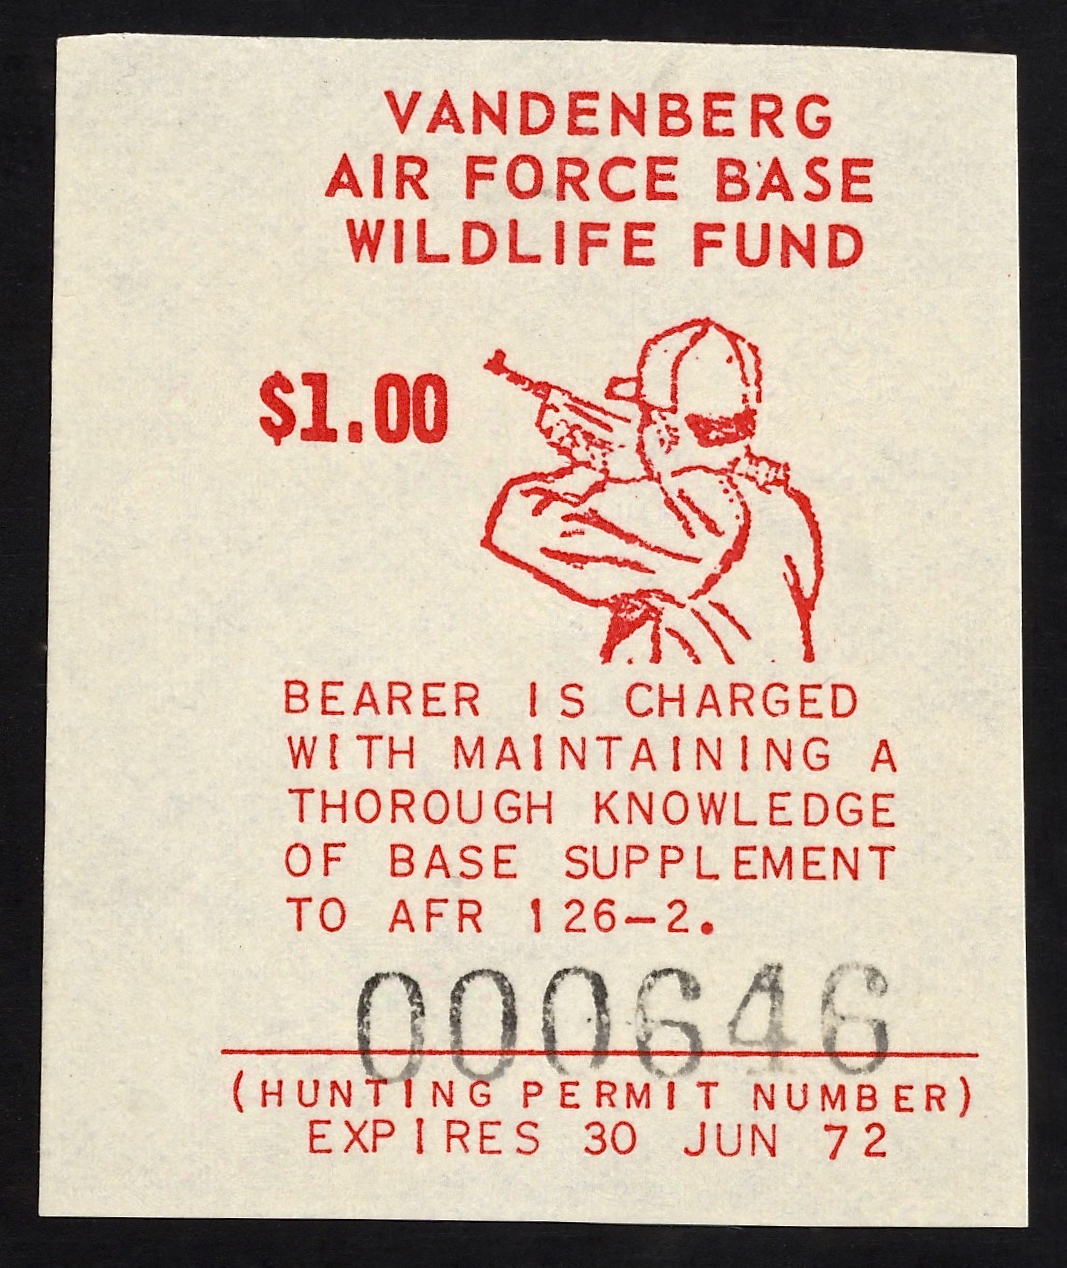 1970-71 VAFB Hunting